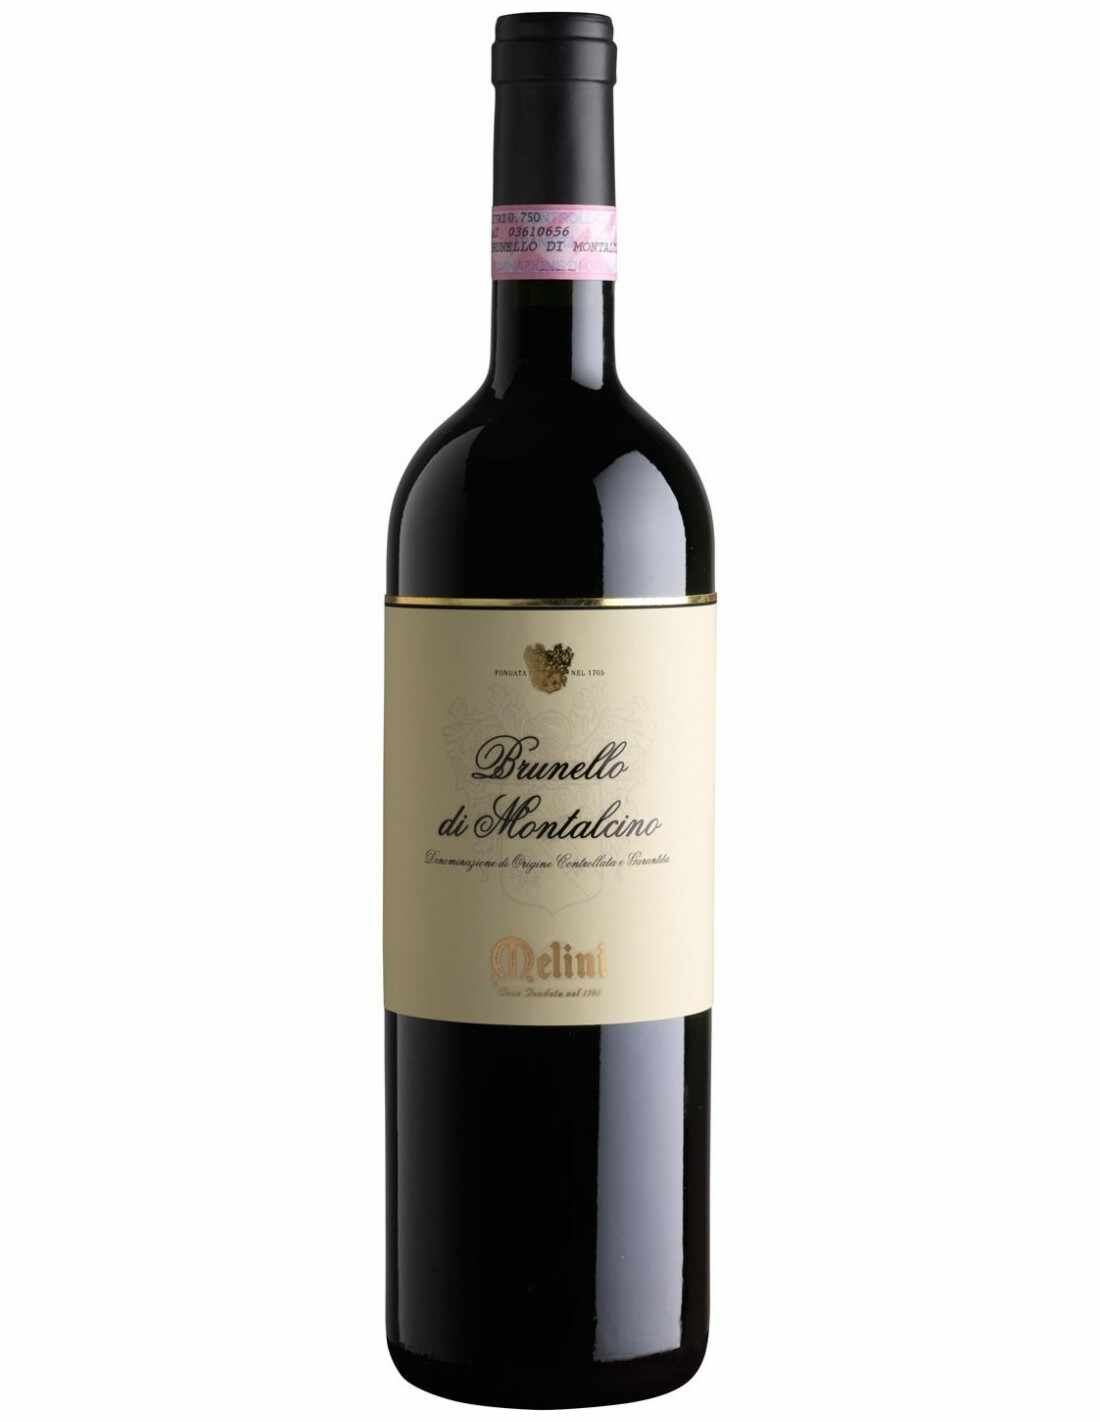 Vin rosu sec, Sangiovese, Melini Brunello di Montalcino, 0.75L, 13.8% alc., Italia